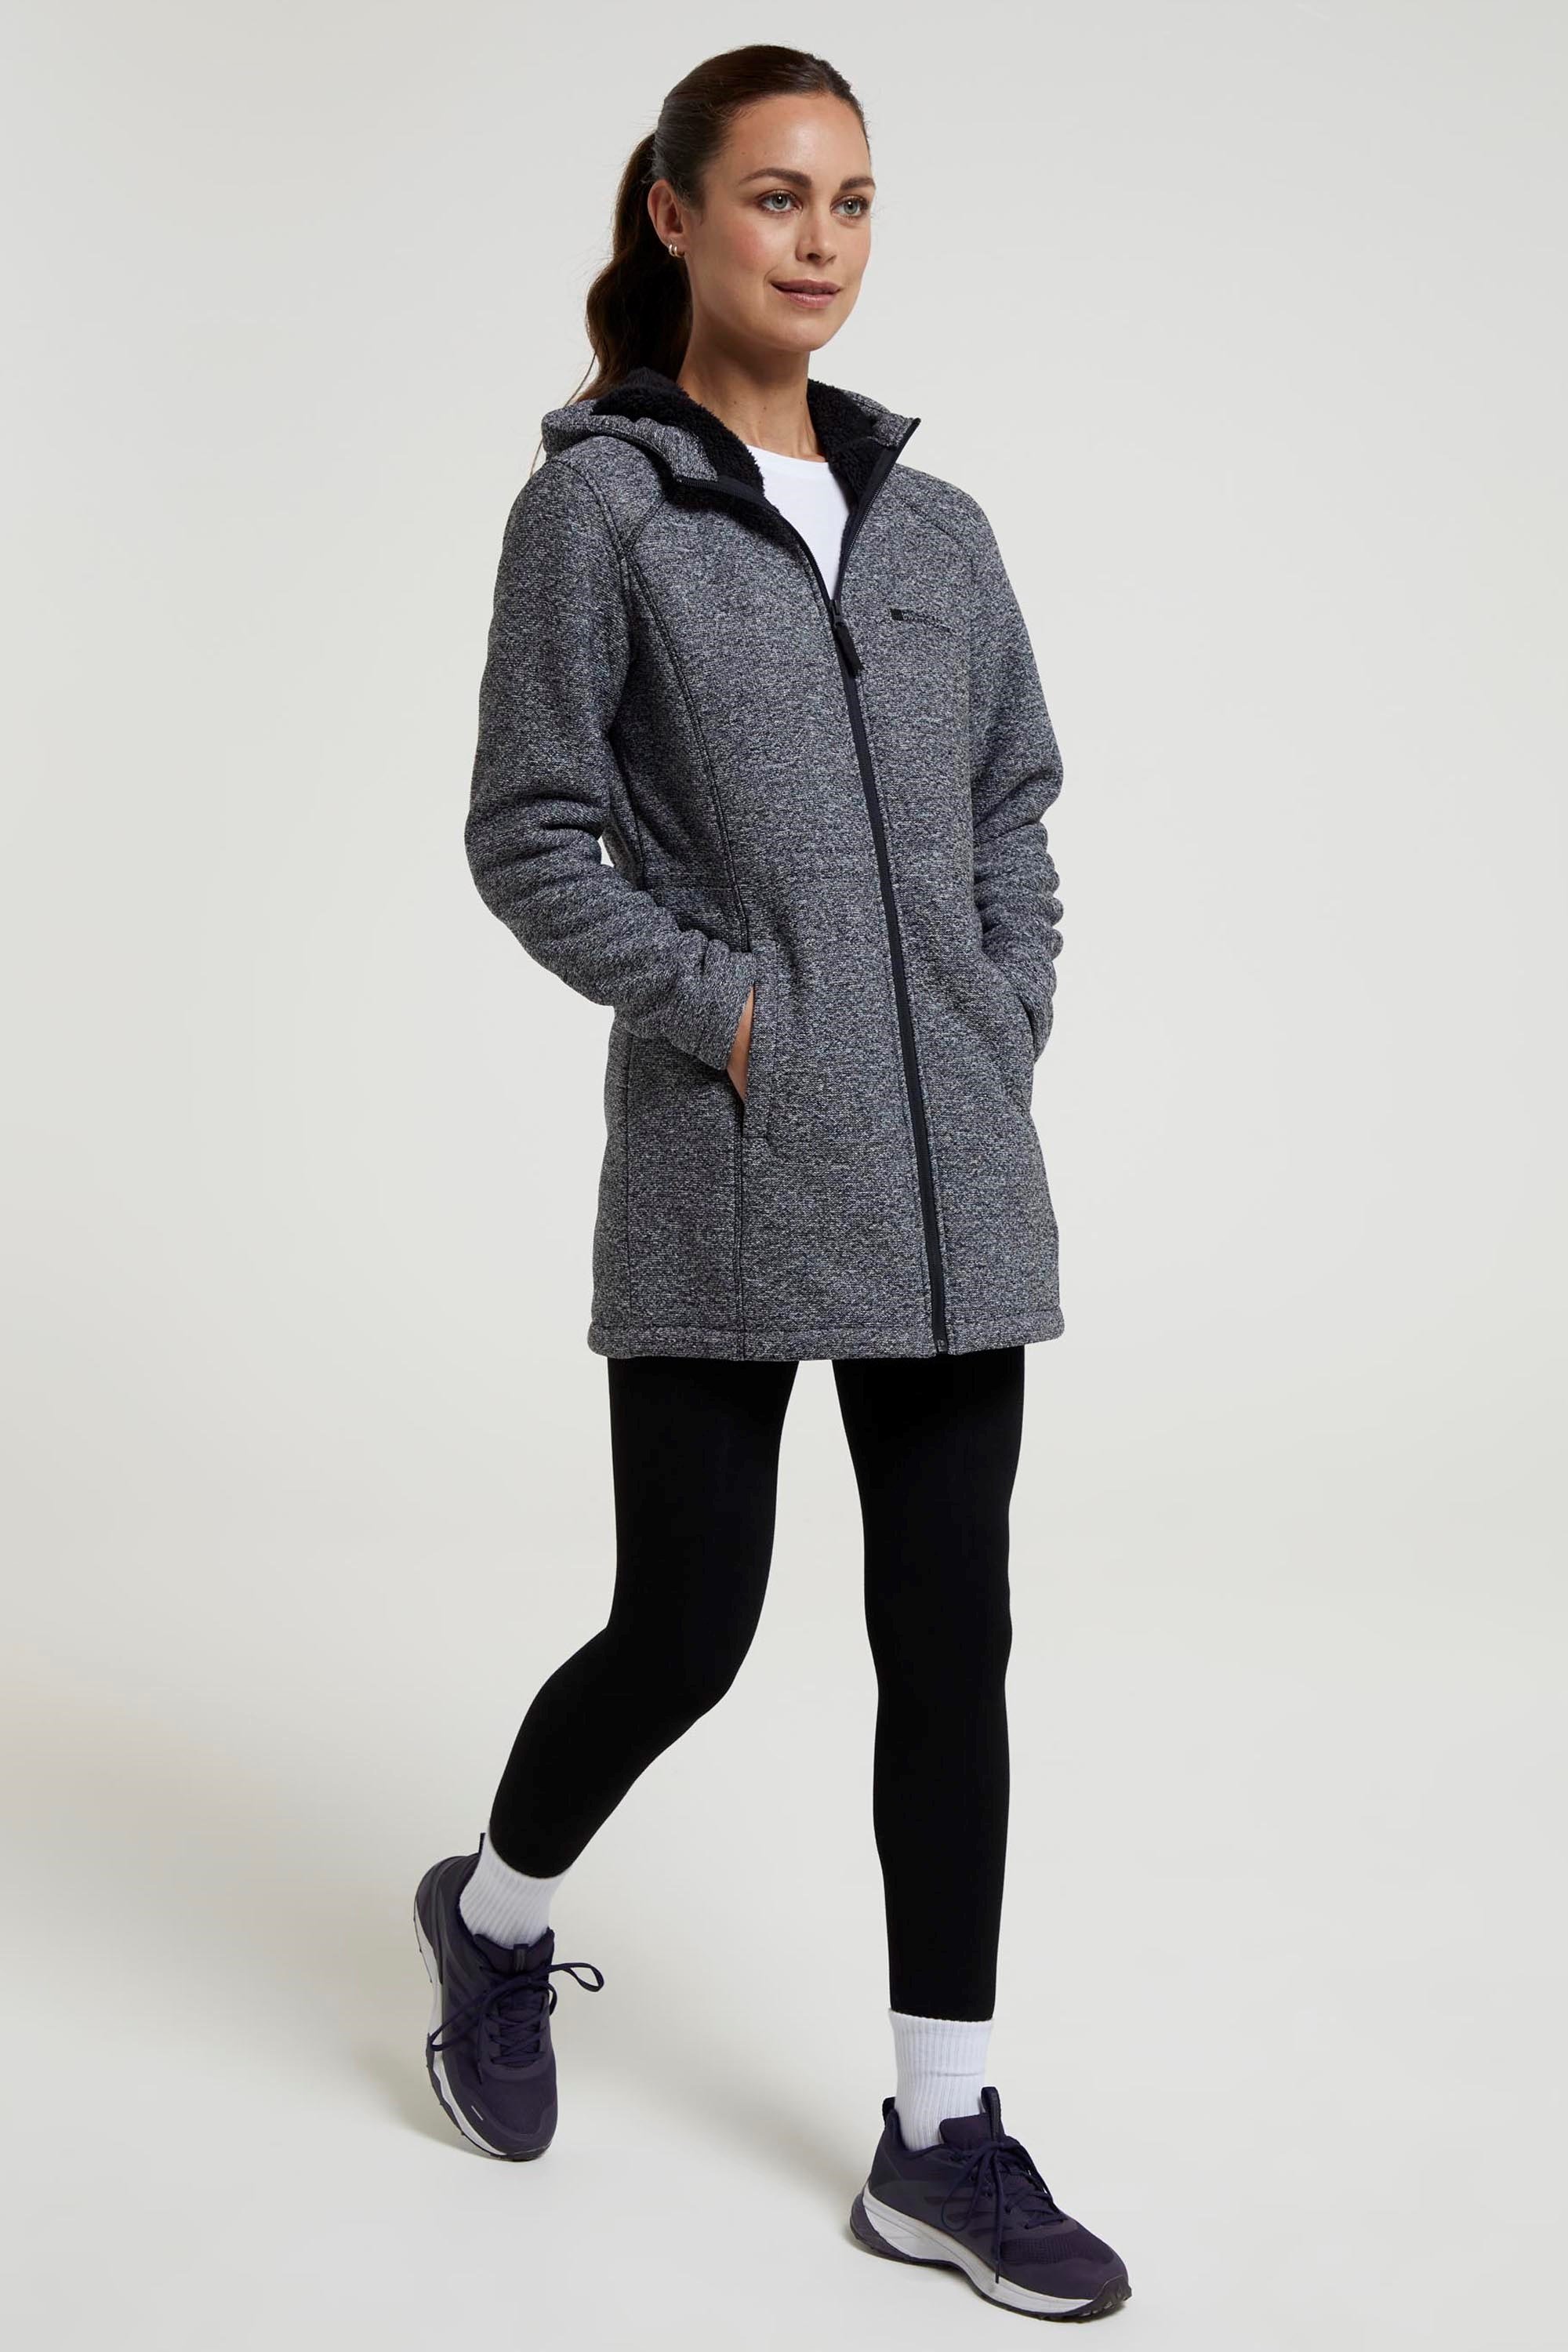 Mountain Warehouse Birch Womens Longline Fleece Jacket - Full-zip